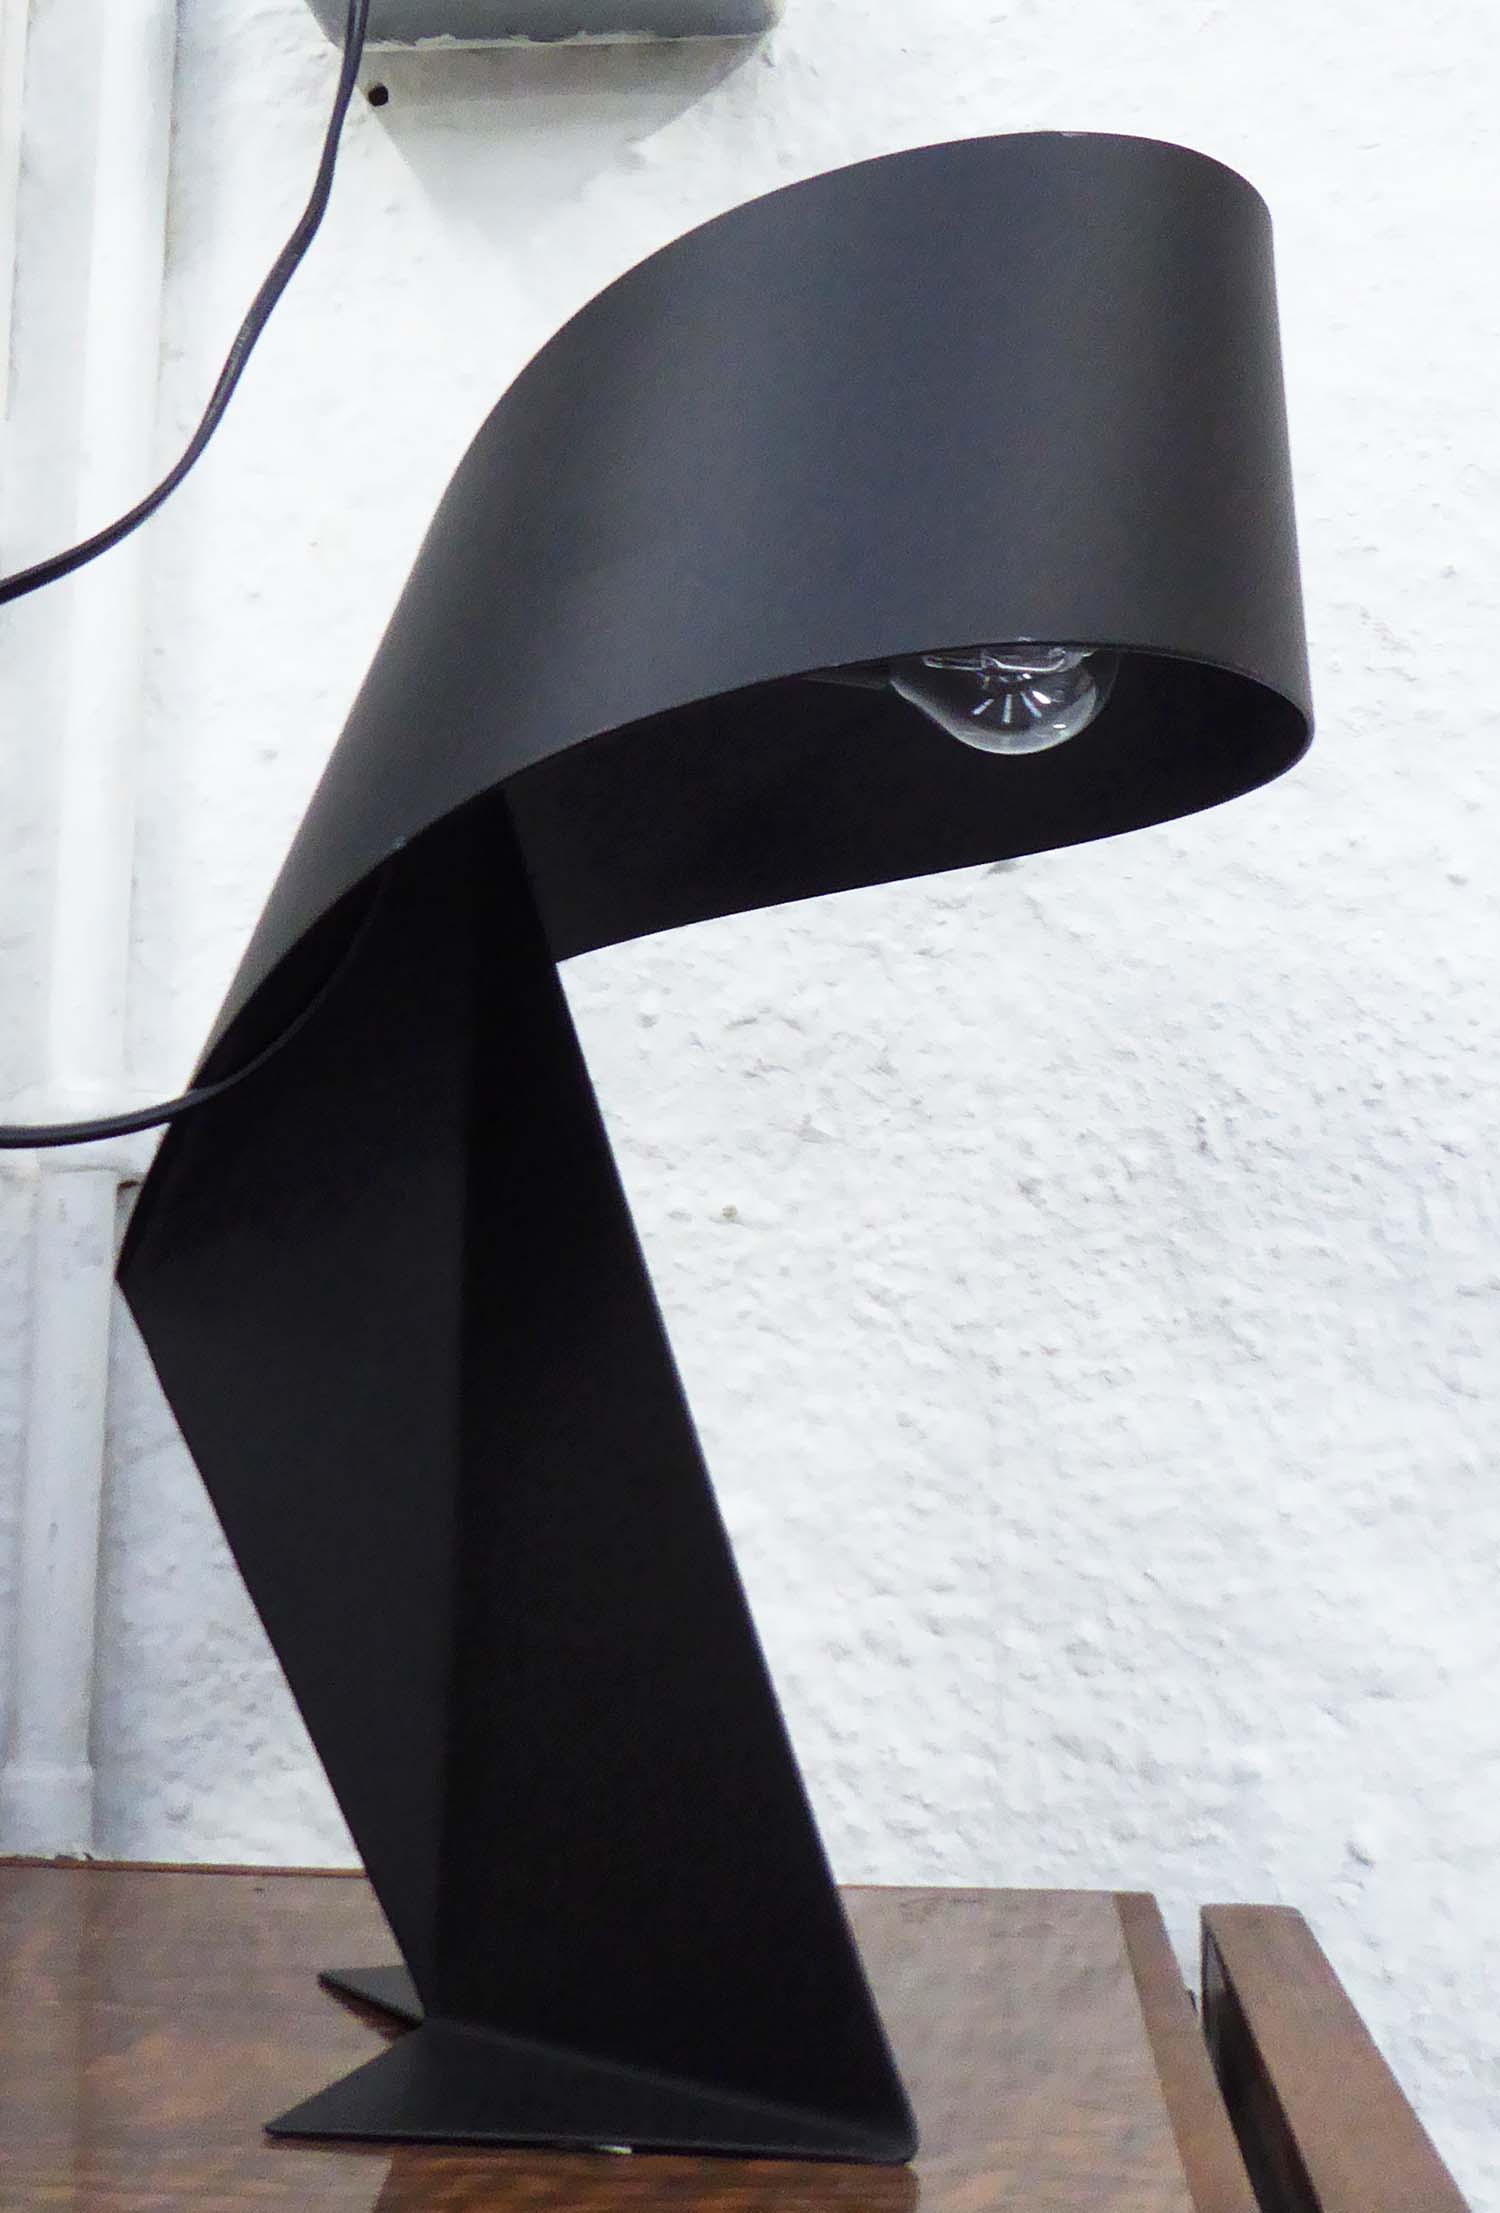 HABITAT RIBBON LAMP, black finish, 35cm H. - Image 2 of 2